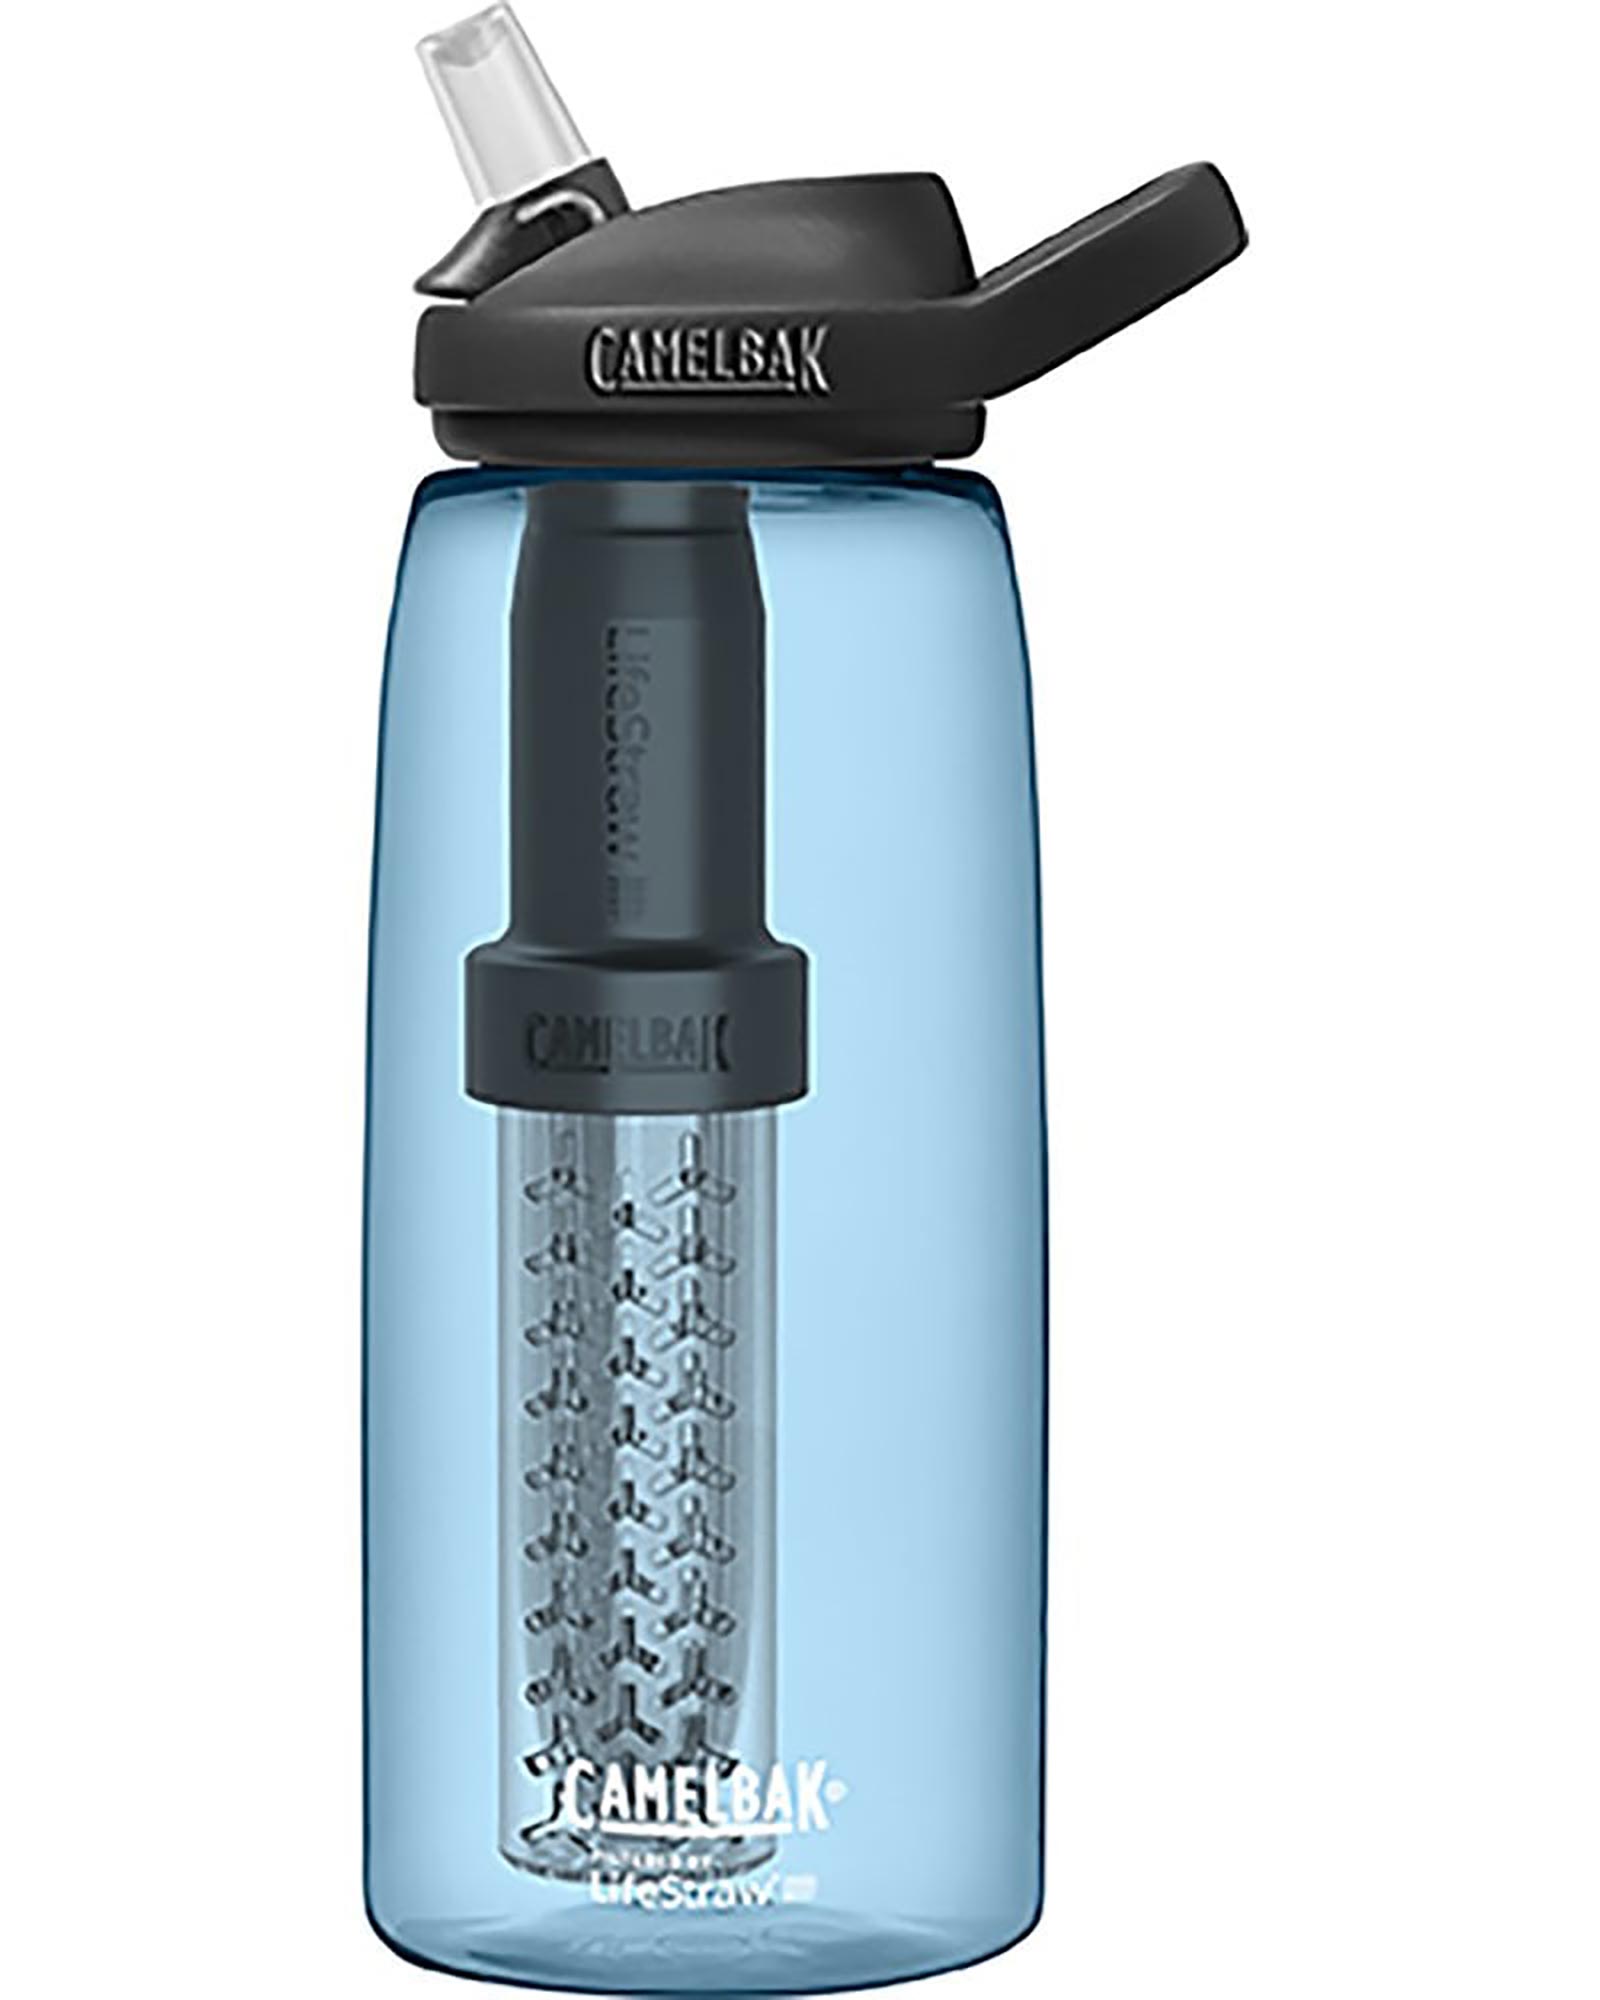 CamelBak eddy+ 1L Water Filter Bottle by Lifestraw - True Blue